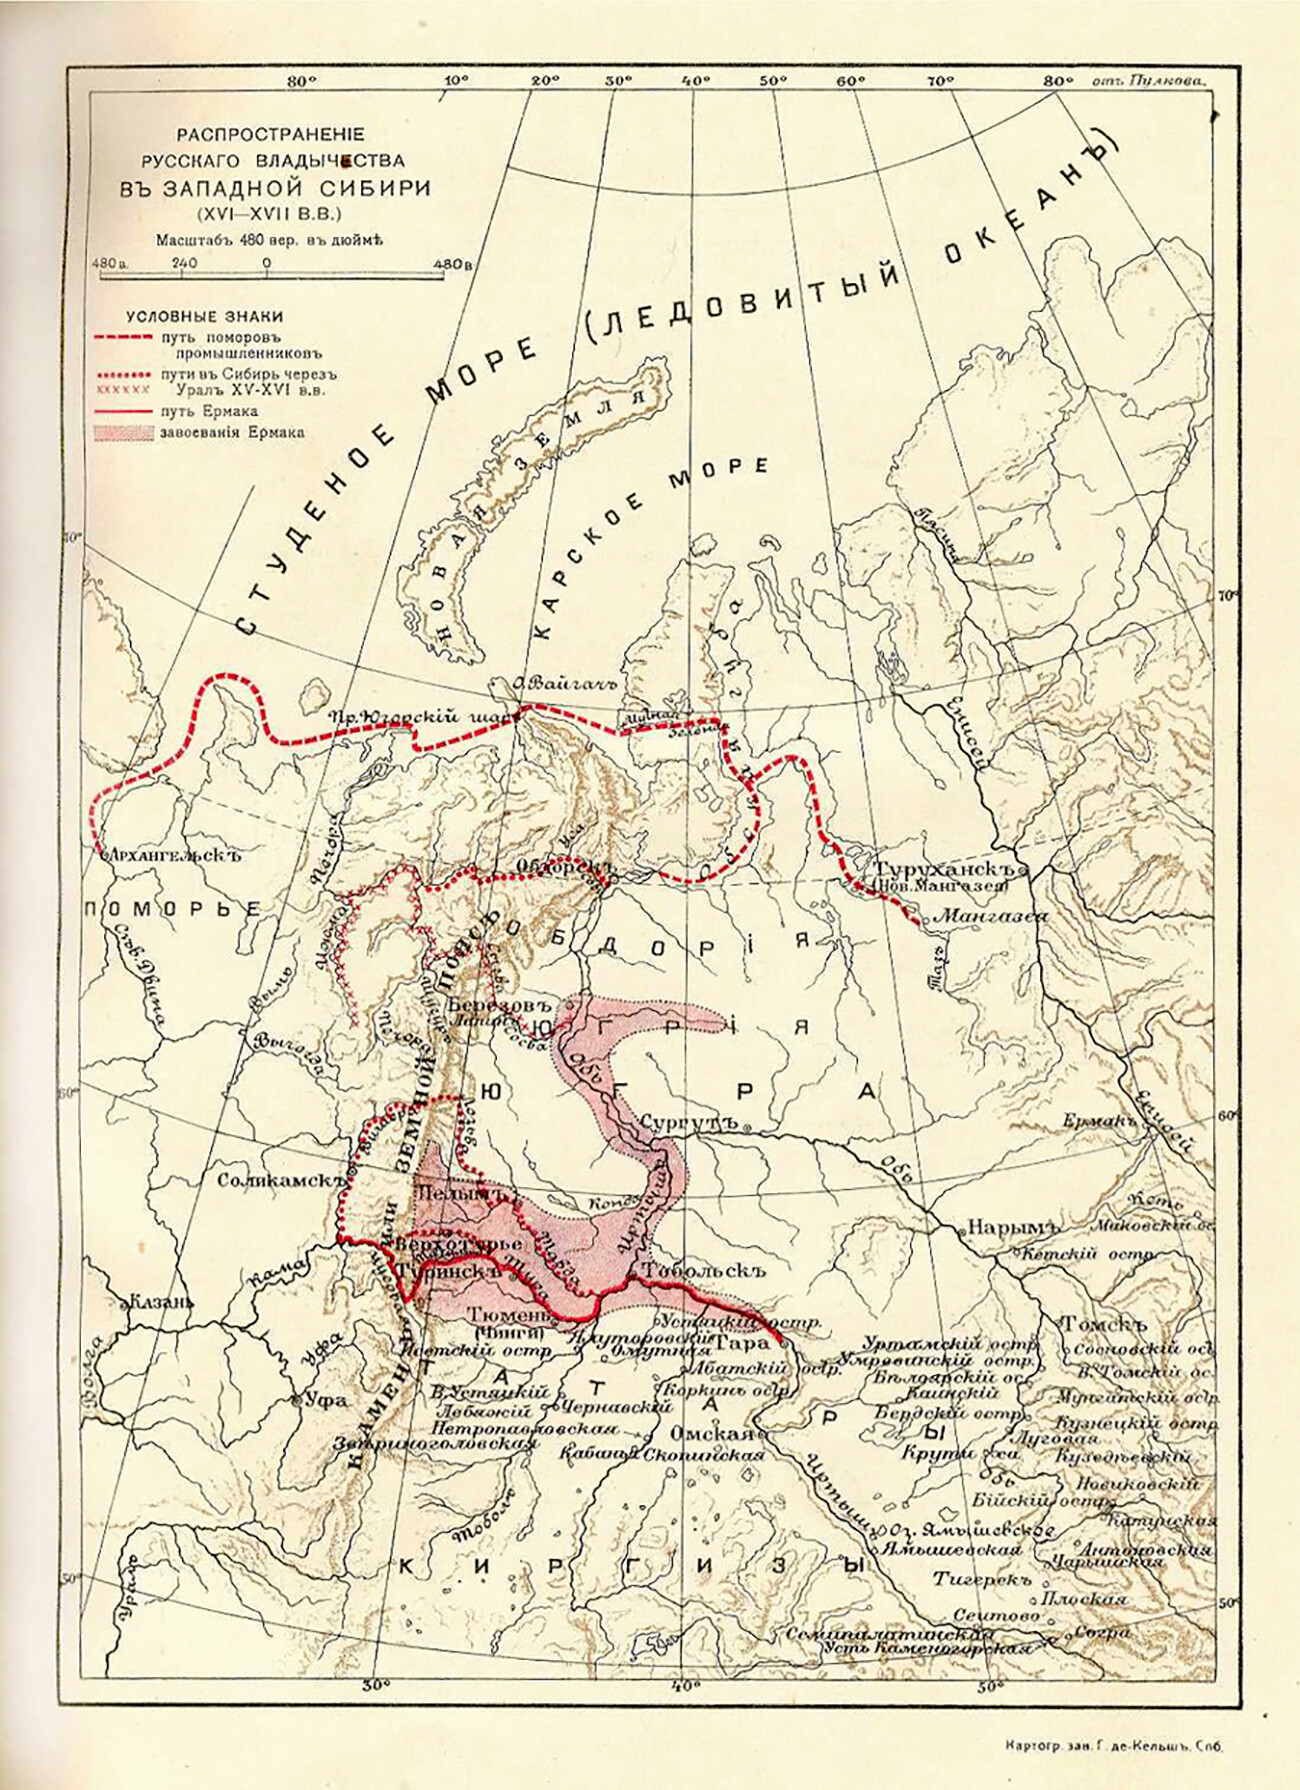 Mappa delle conquiste territoriali russe nella Siberia occidentale nel XVI secolo